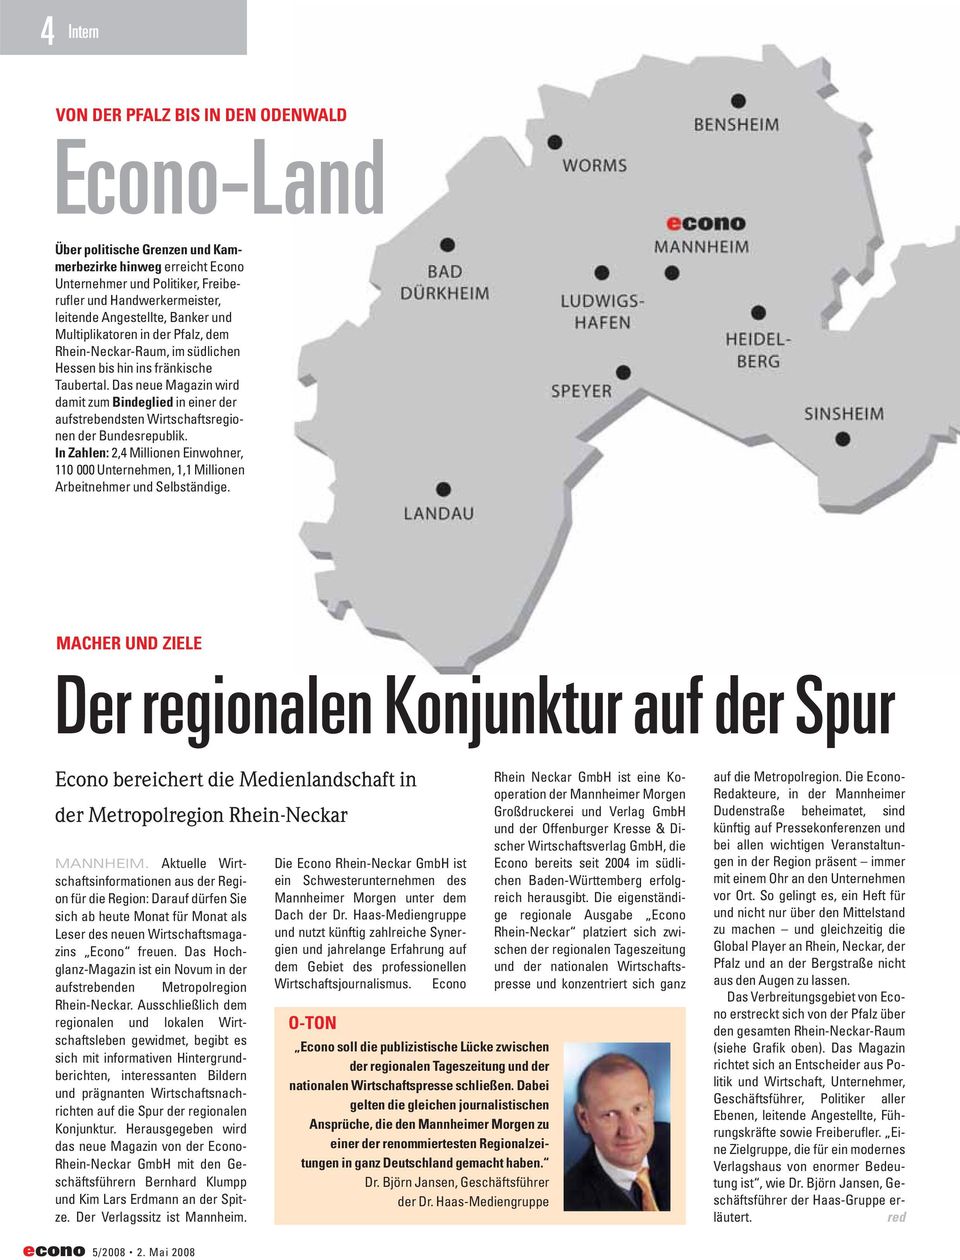 Das neue Magazin wird damit zum Bindeglied in einer der aufstrebendsten Wirtschaftsregionen der Bundesrepublik.